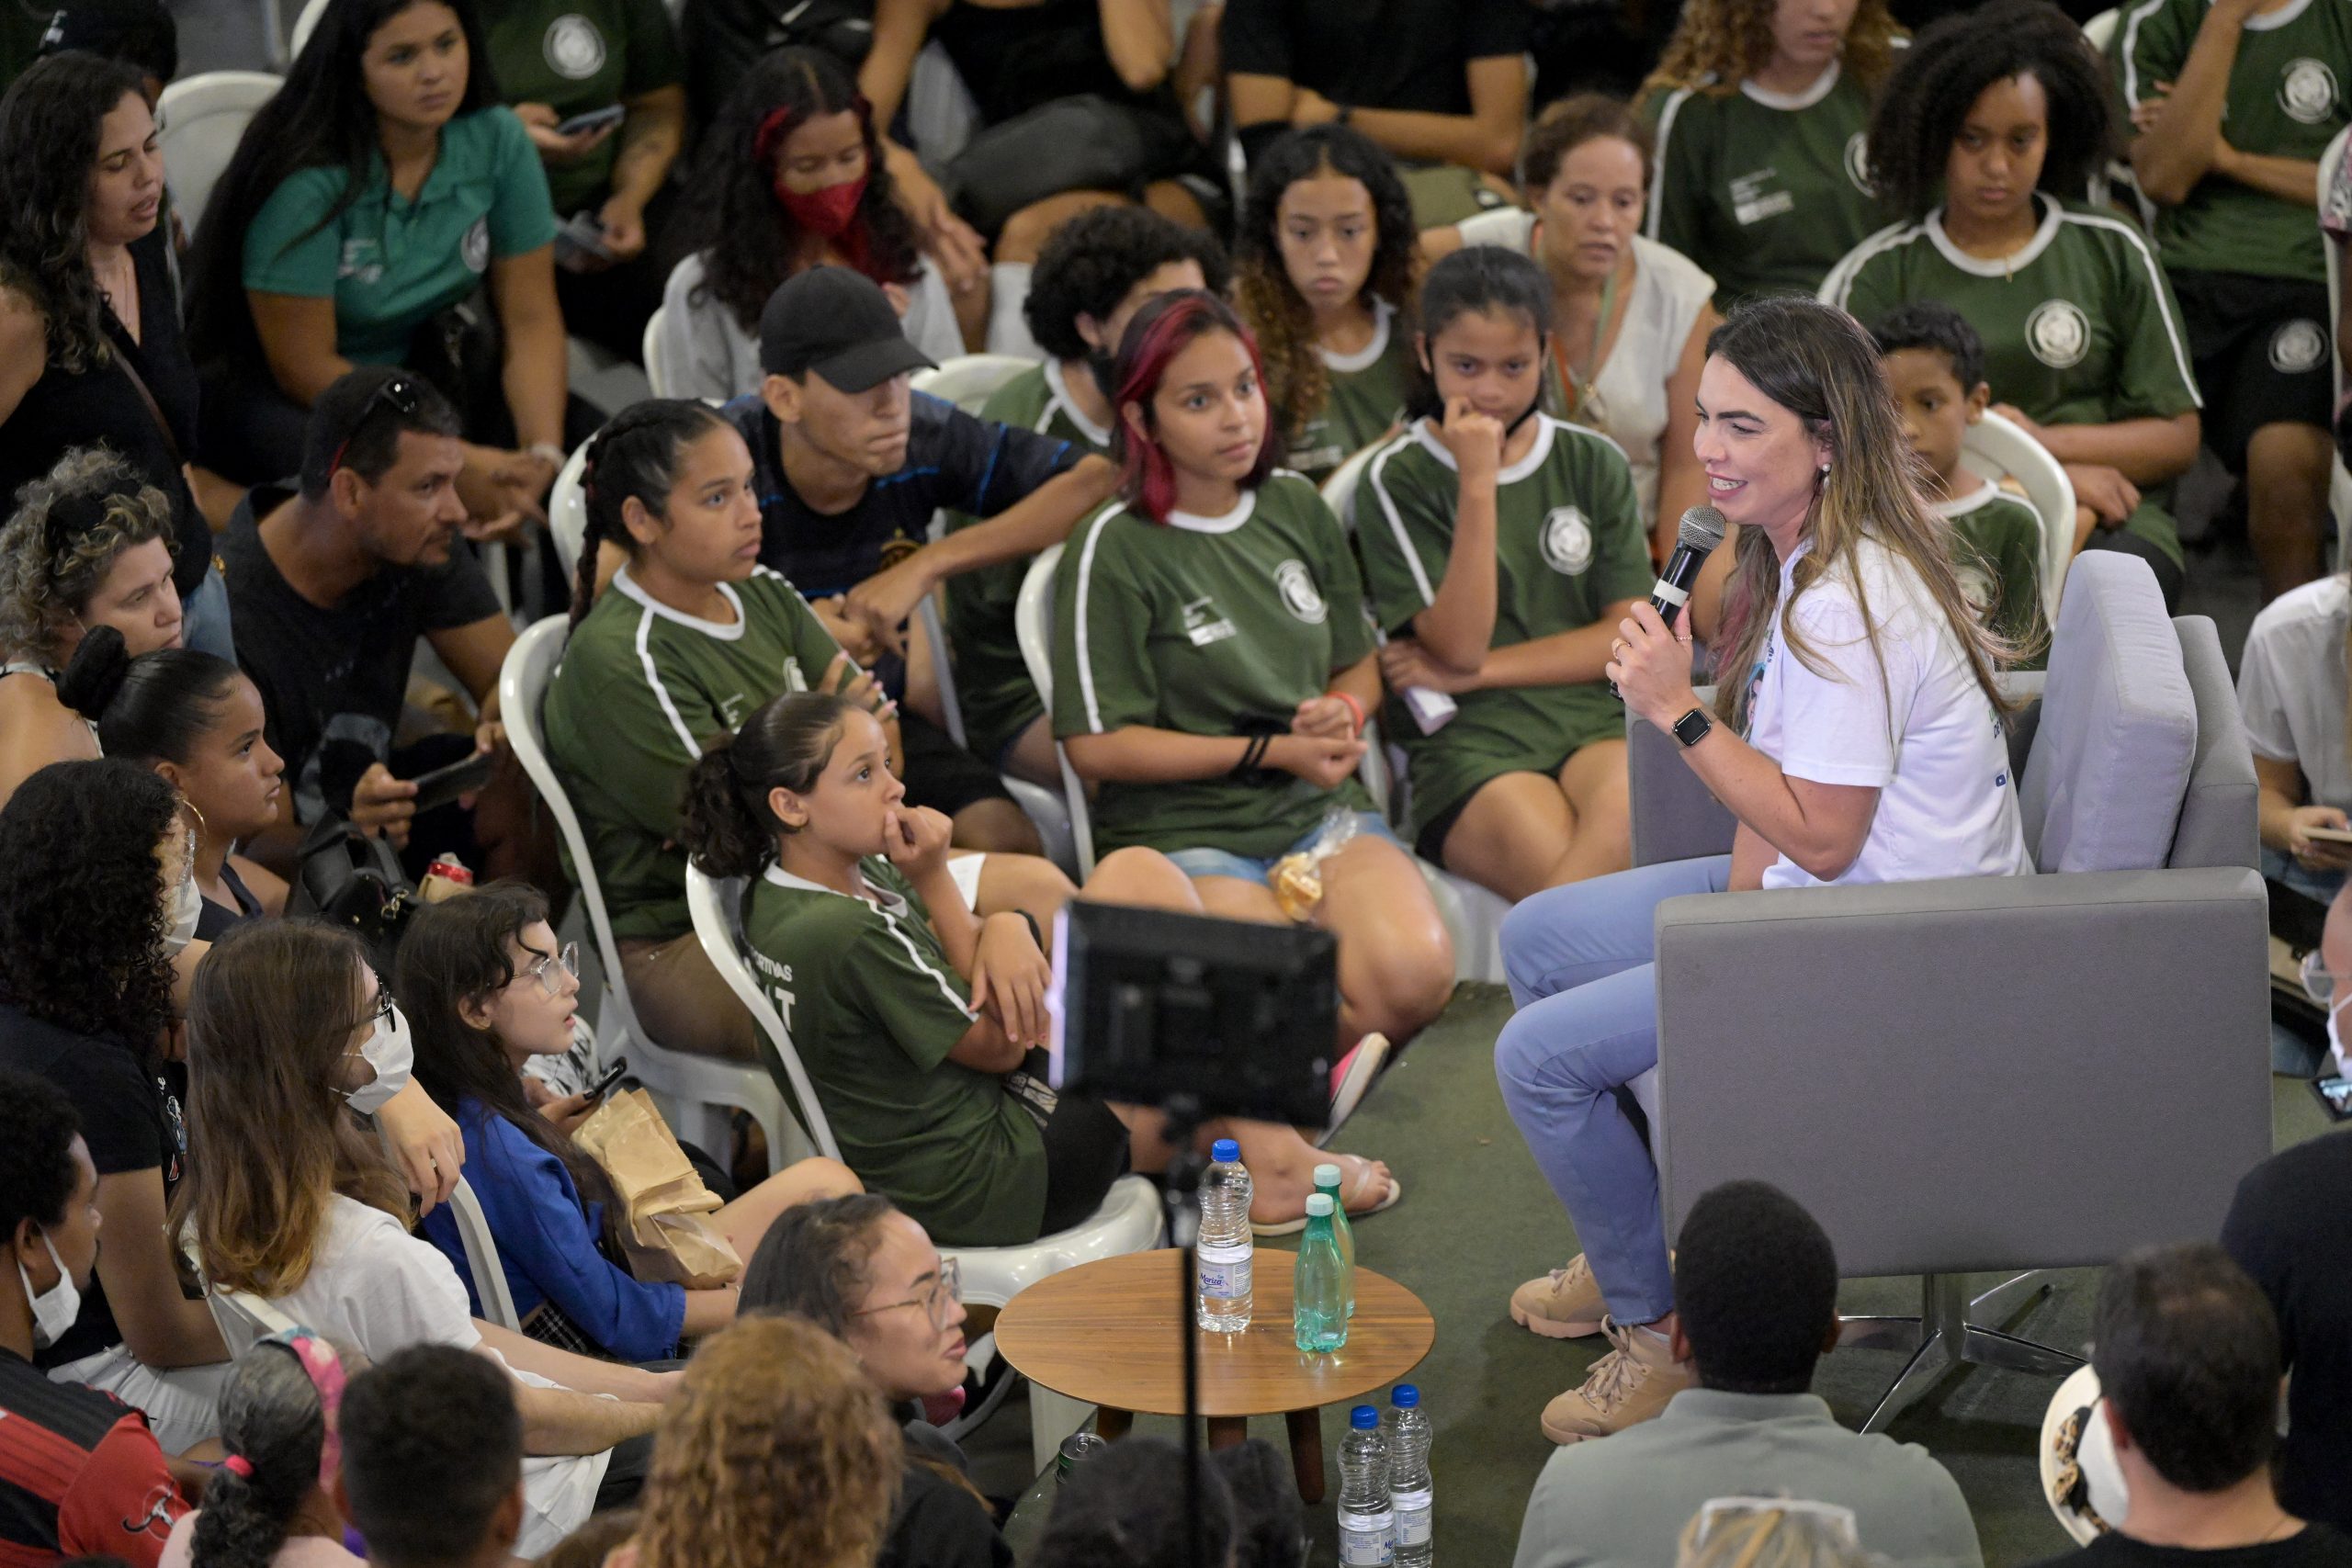 Paula Belmonte promove roda de conversa sobre política em evento com 500 jovens